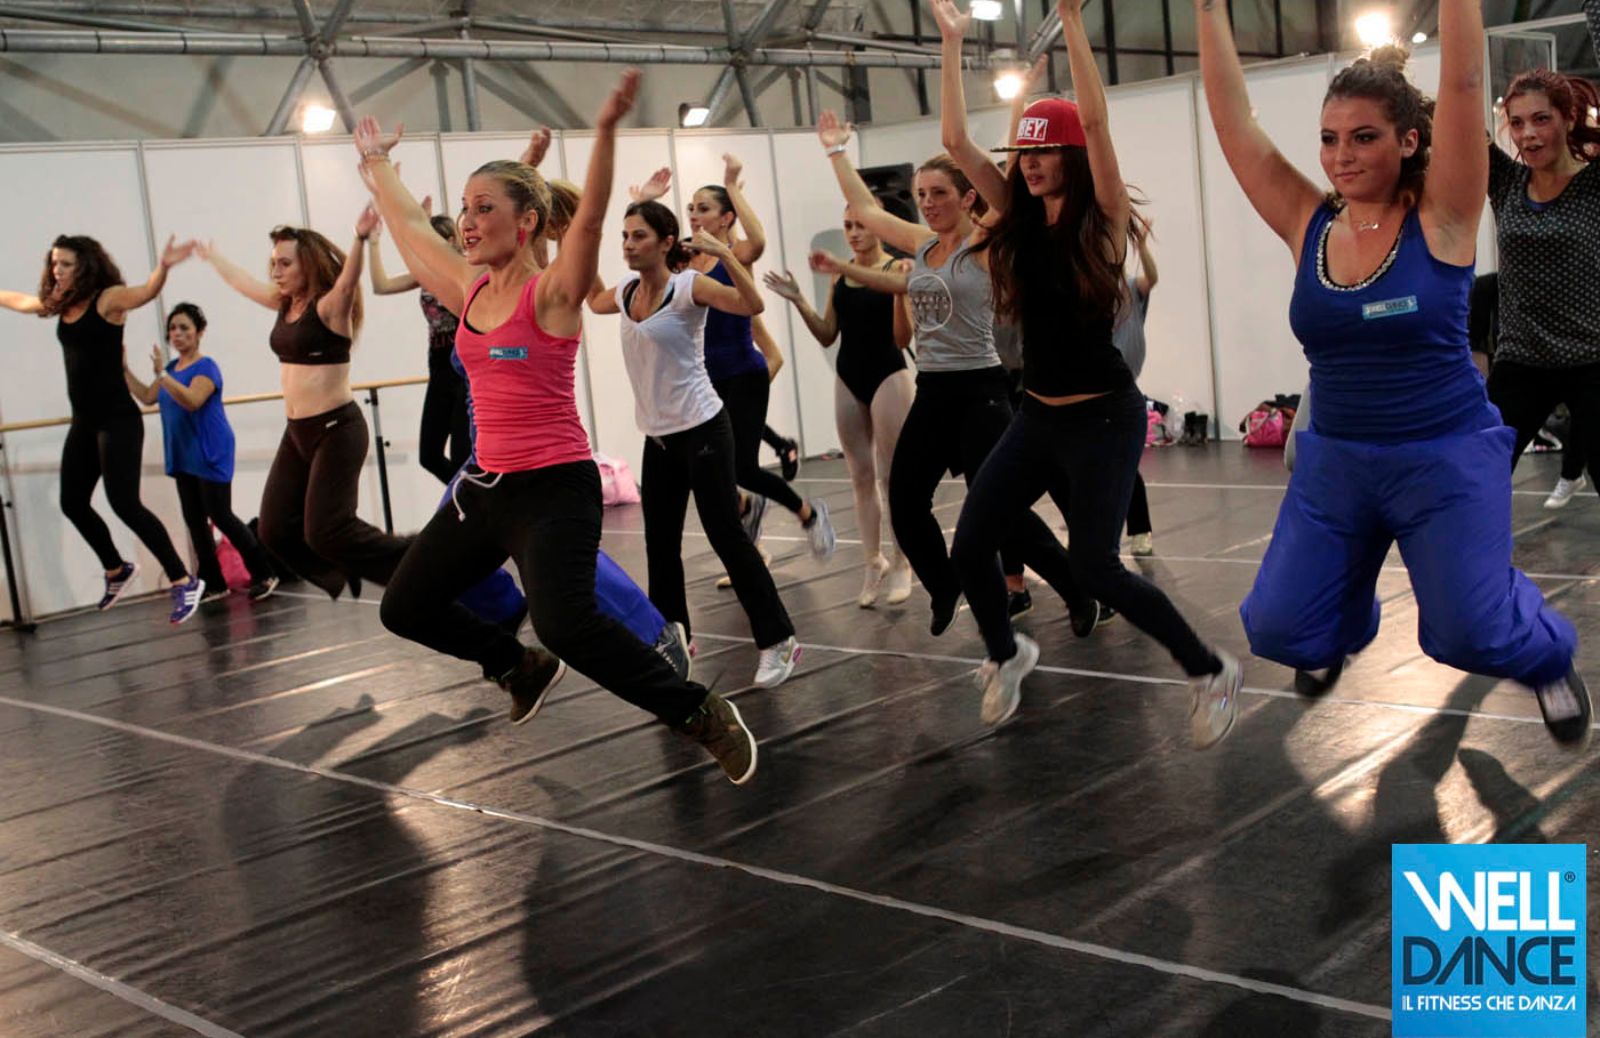 Welldance: come dimagrire e divertirsi con i passi della danza